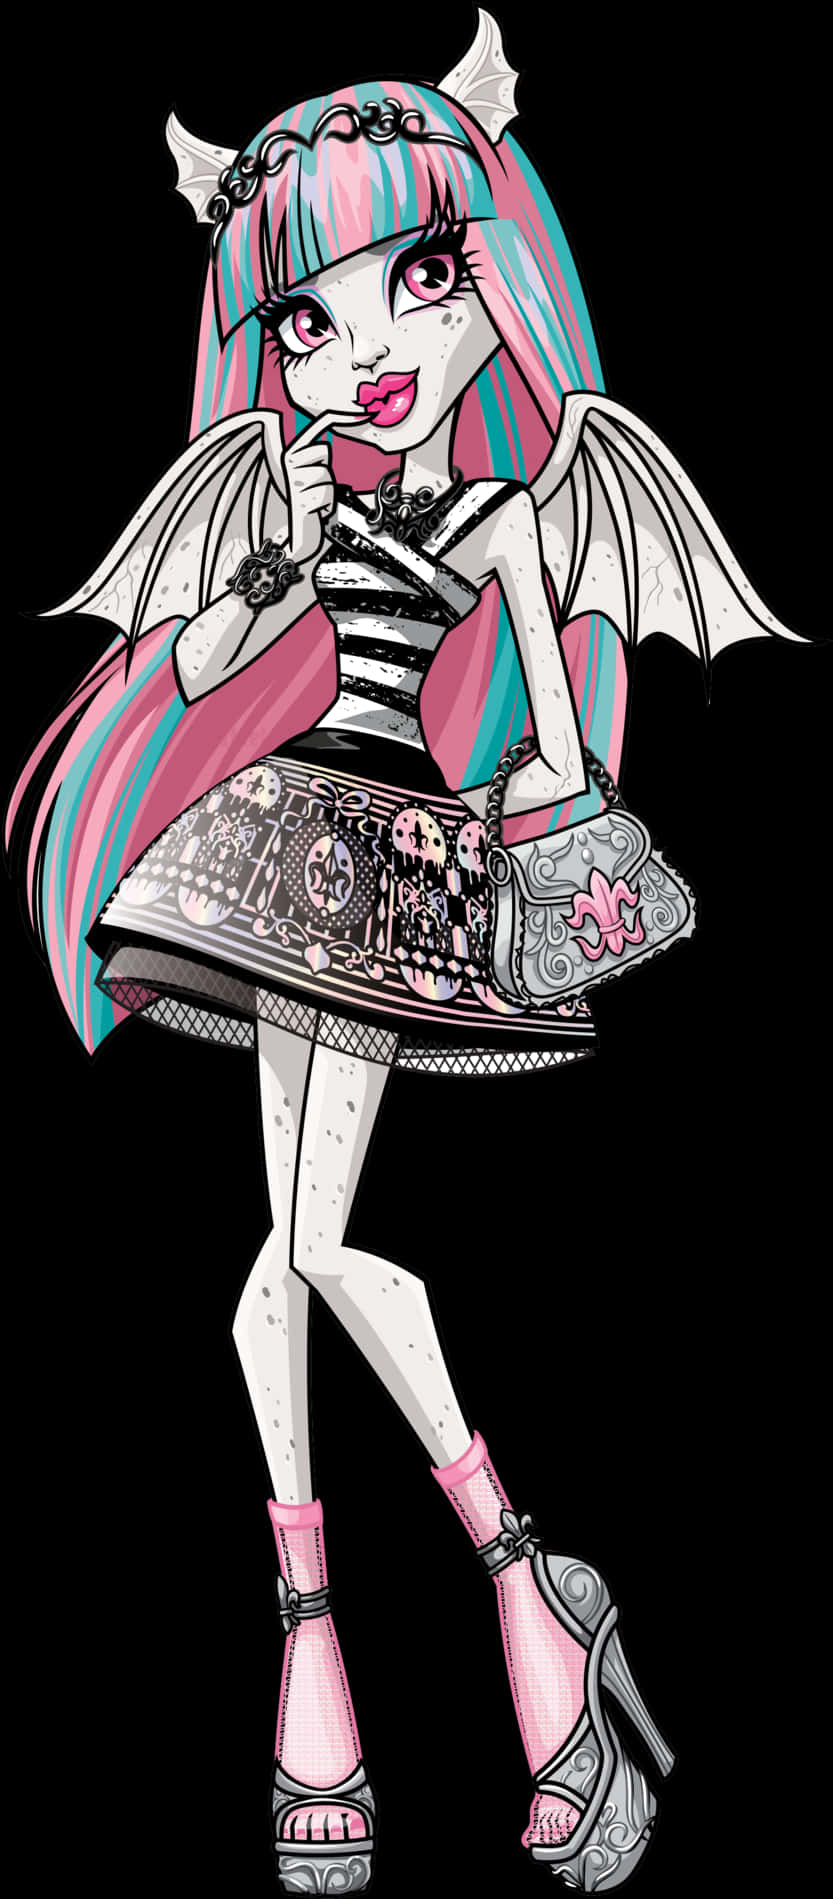 Fashionable Monster Girl Illustration